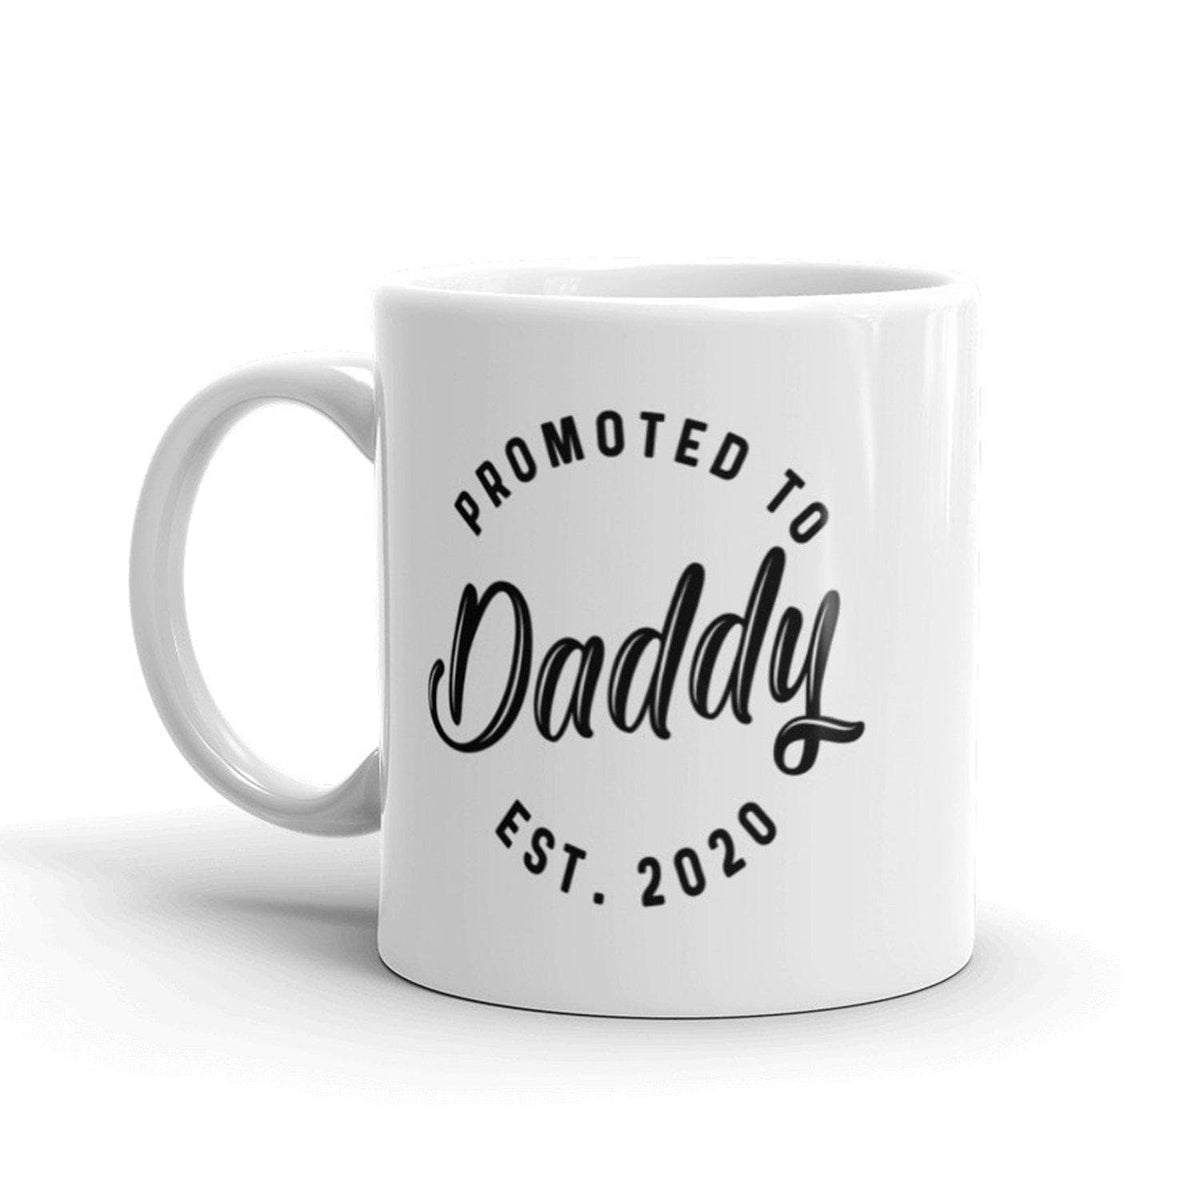 Promoted To Daddy 2020 Mug - Crazy Dog T-Shirts